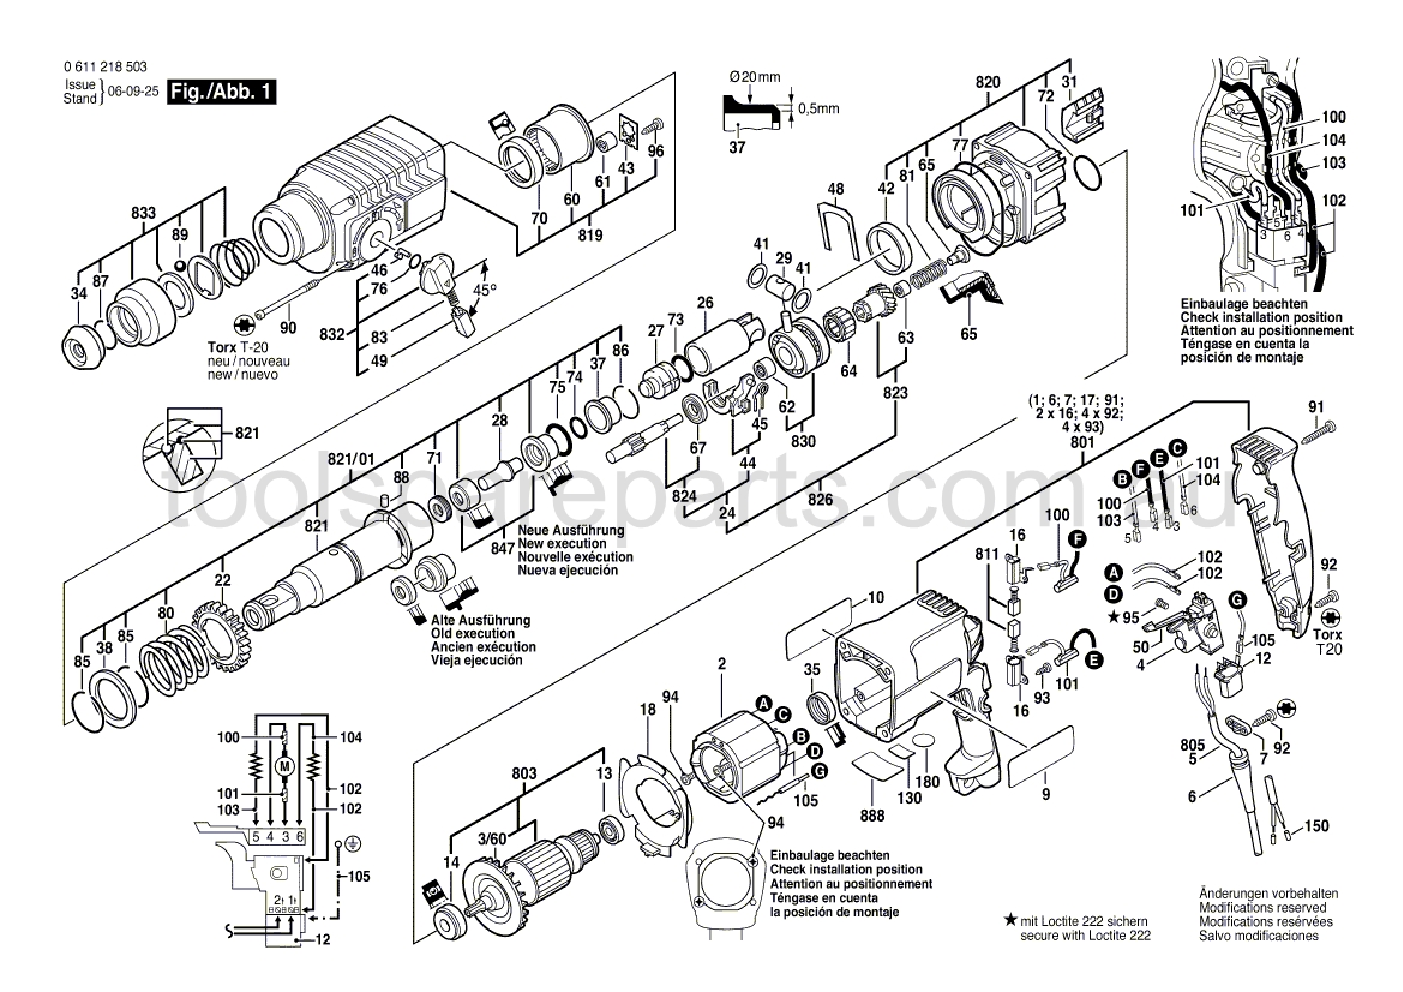 Bosch GBH 2-24 DSR 0611218537  Diagram 1